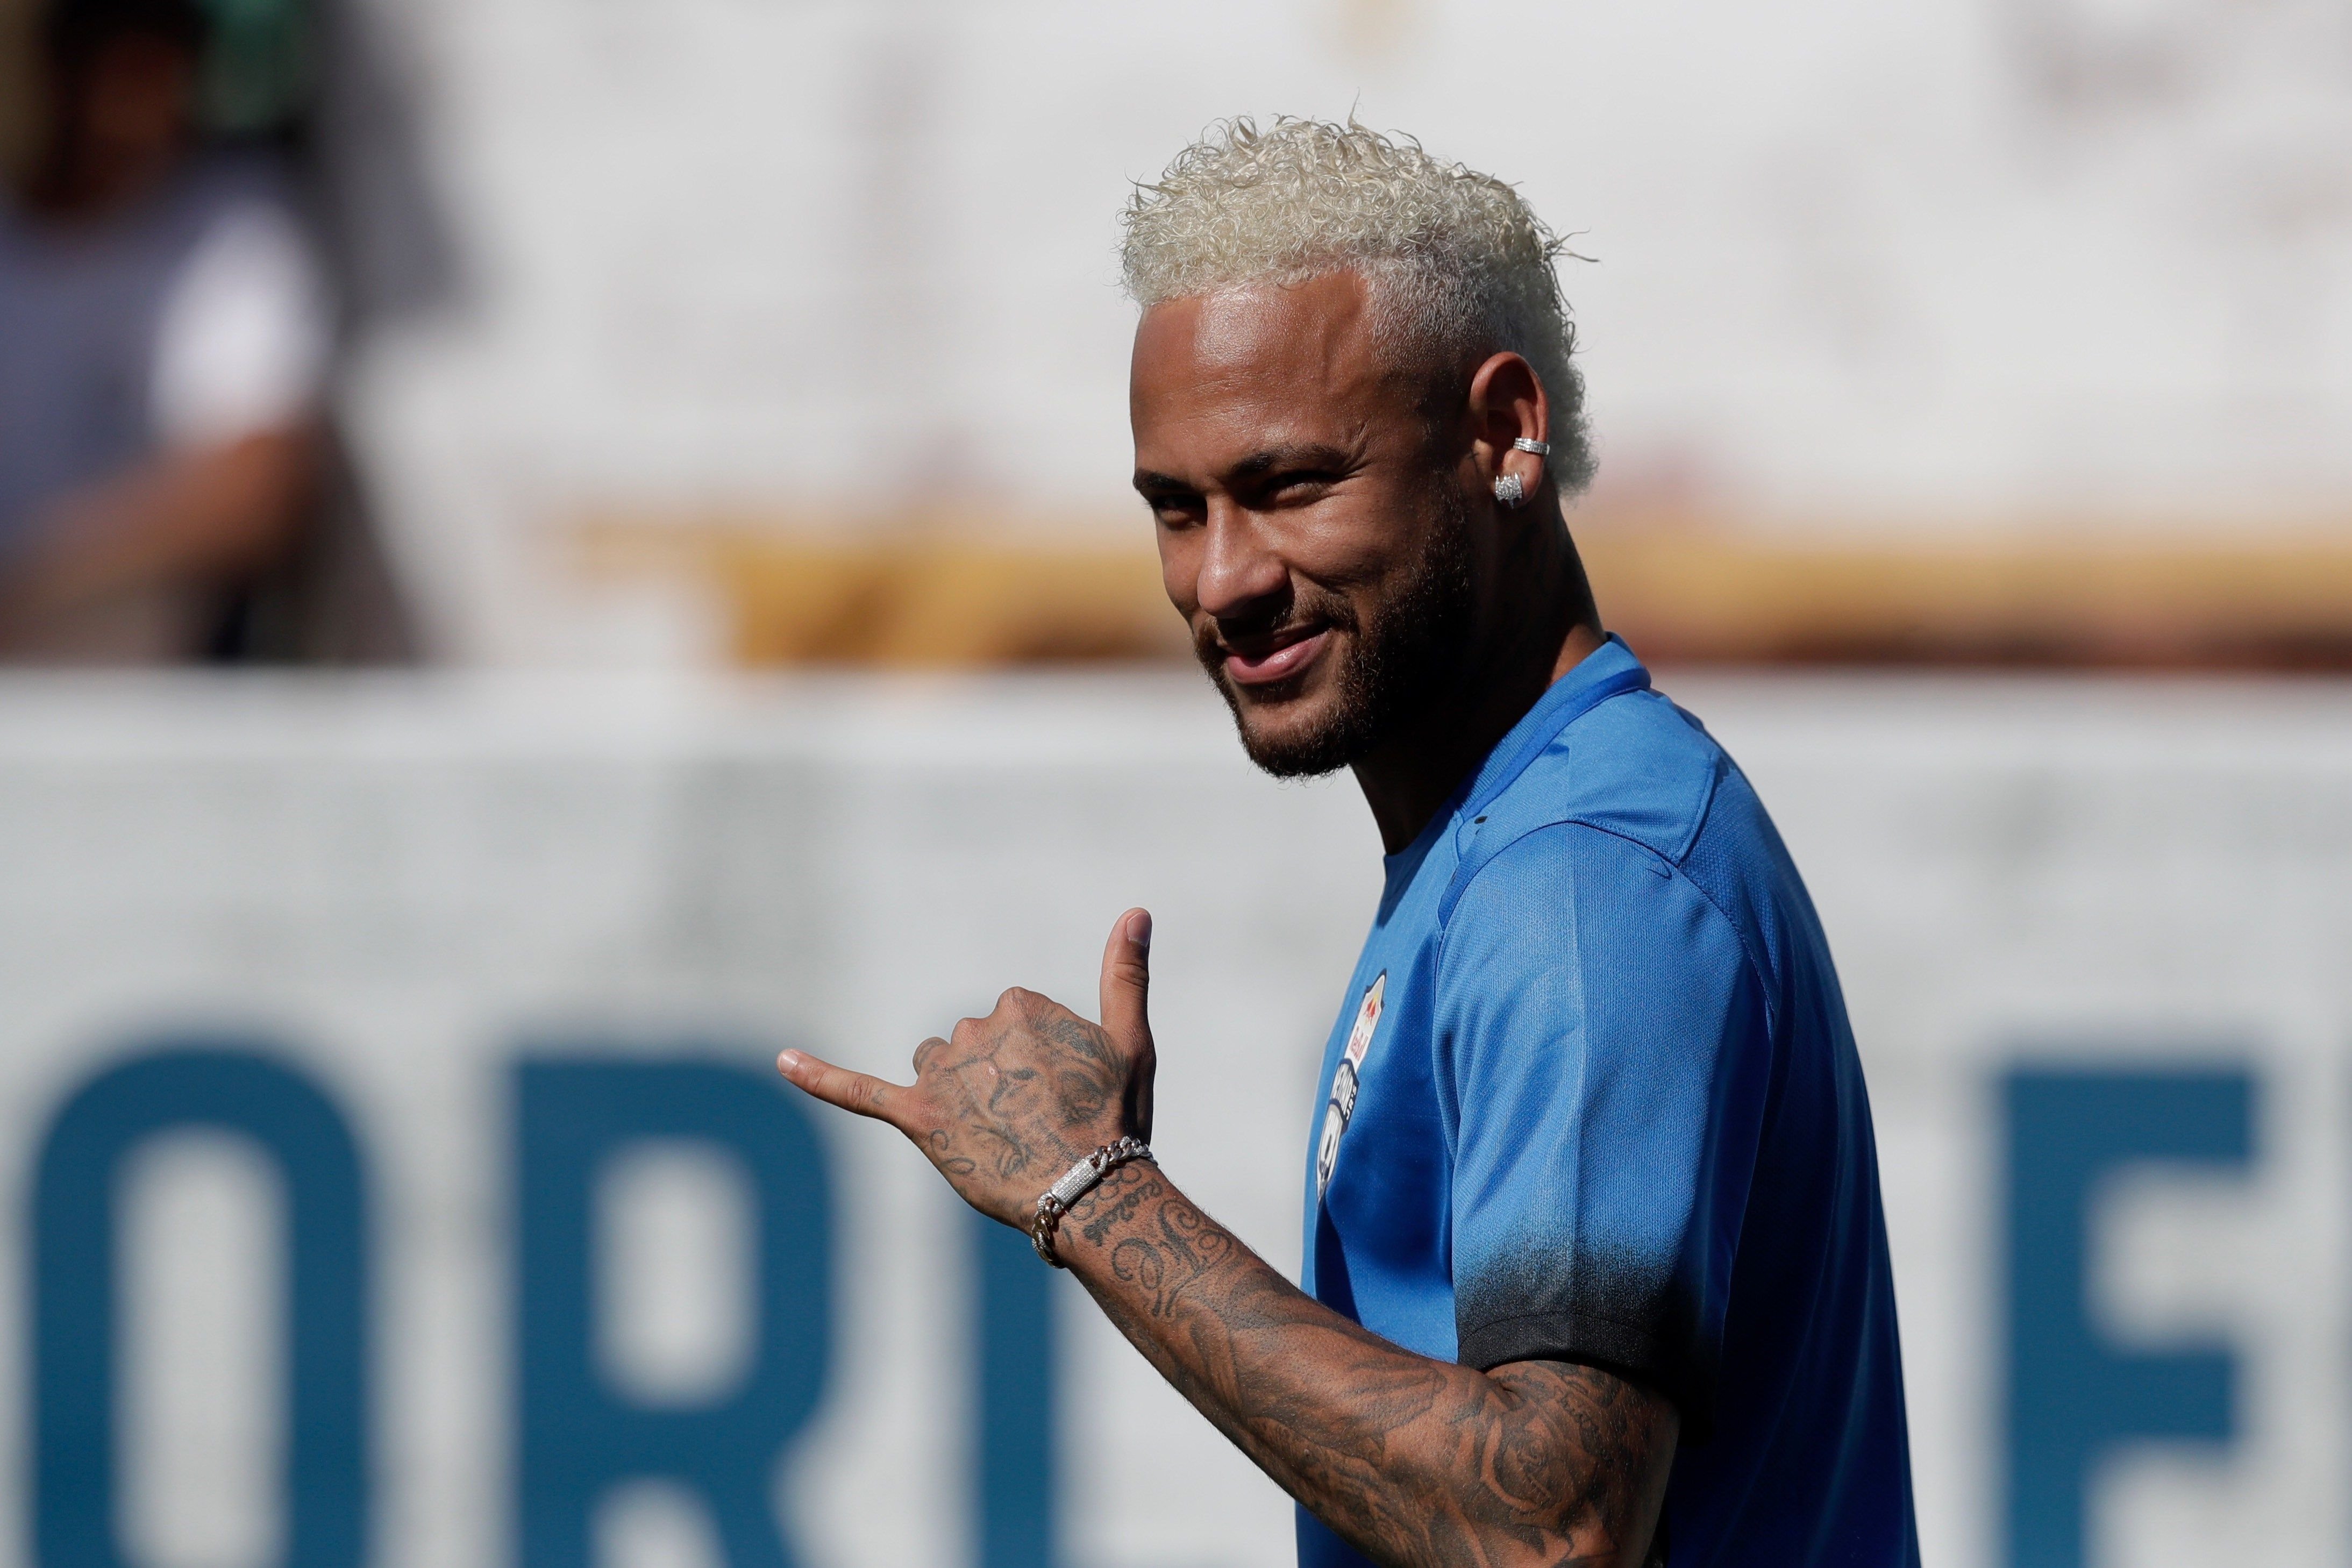 El Barça ofereix 160 milions per Neymar